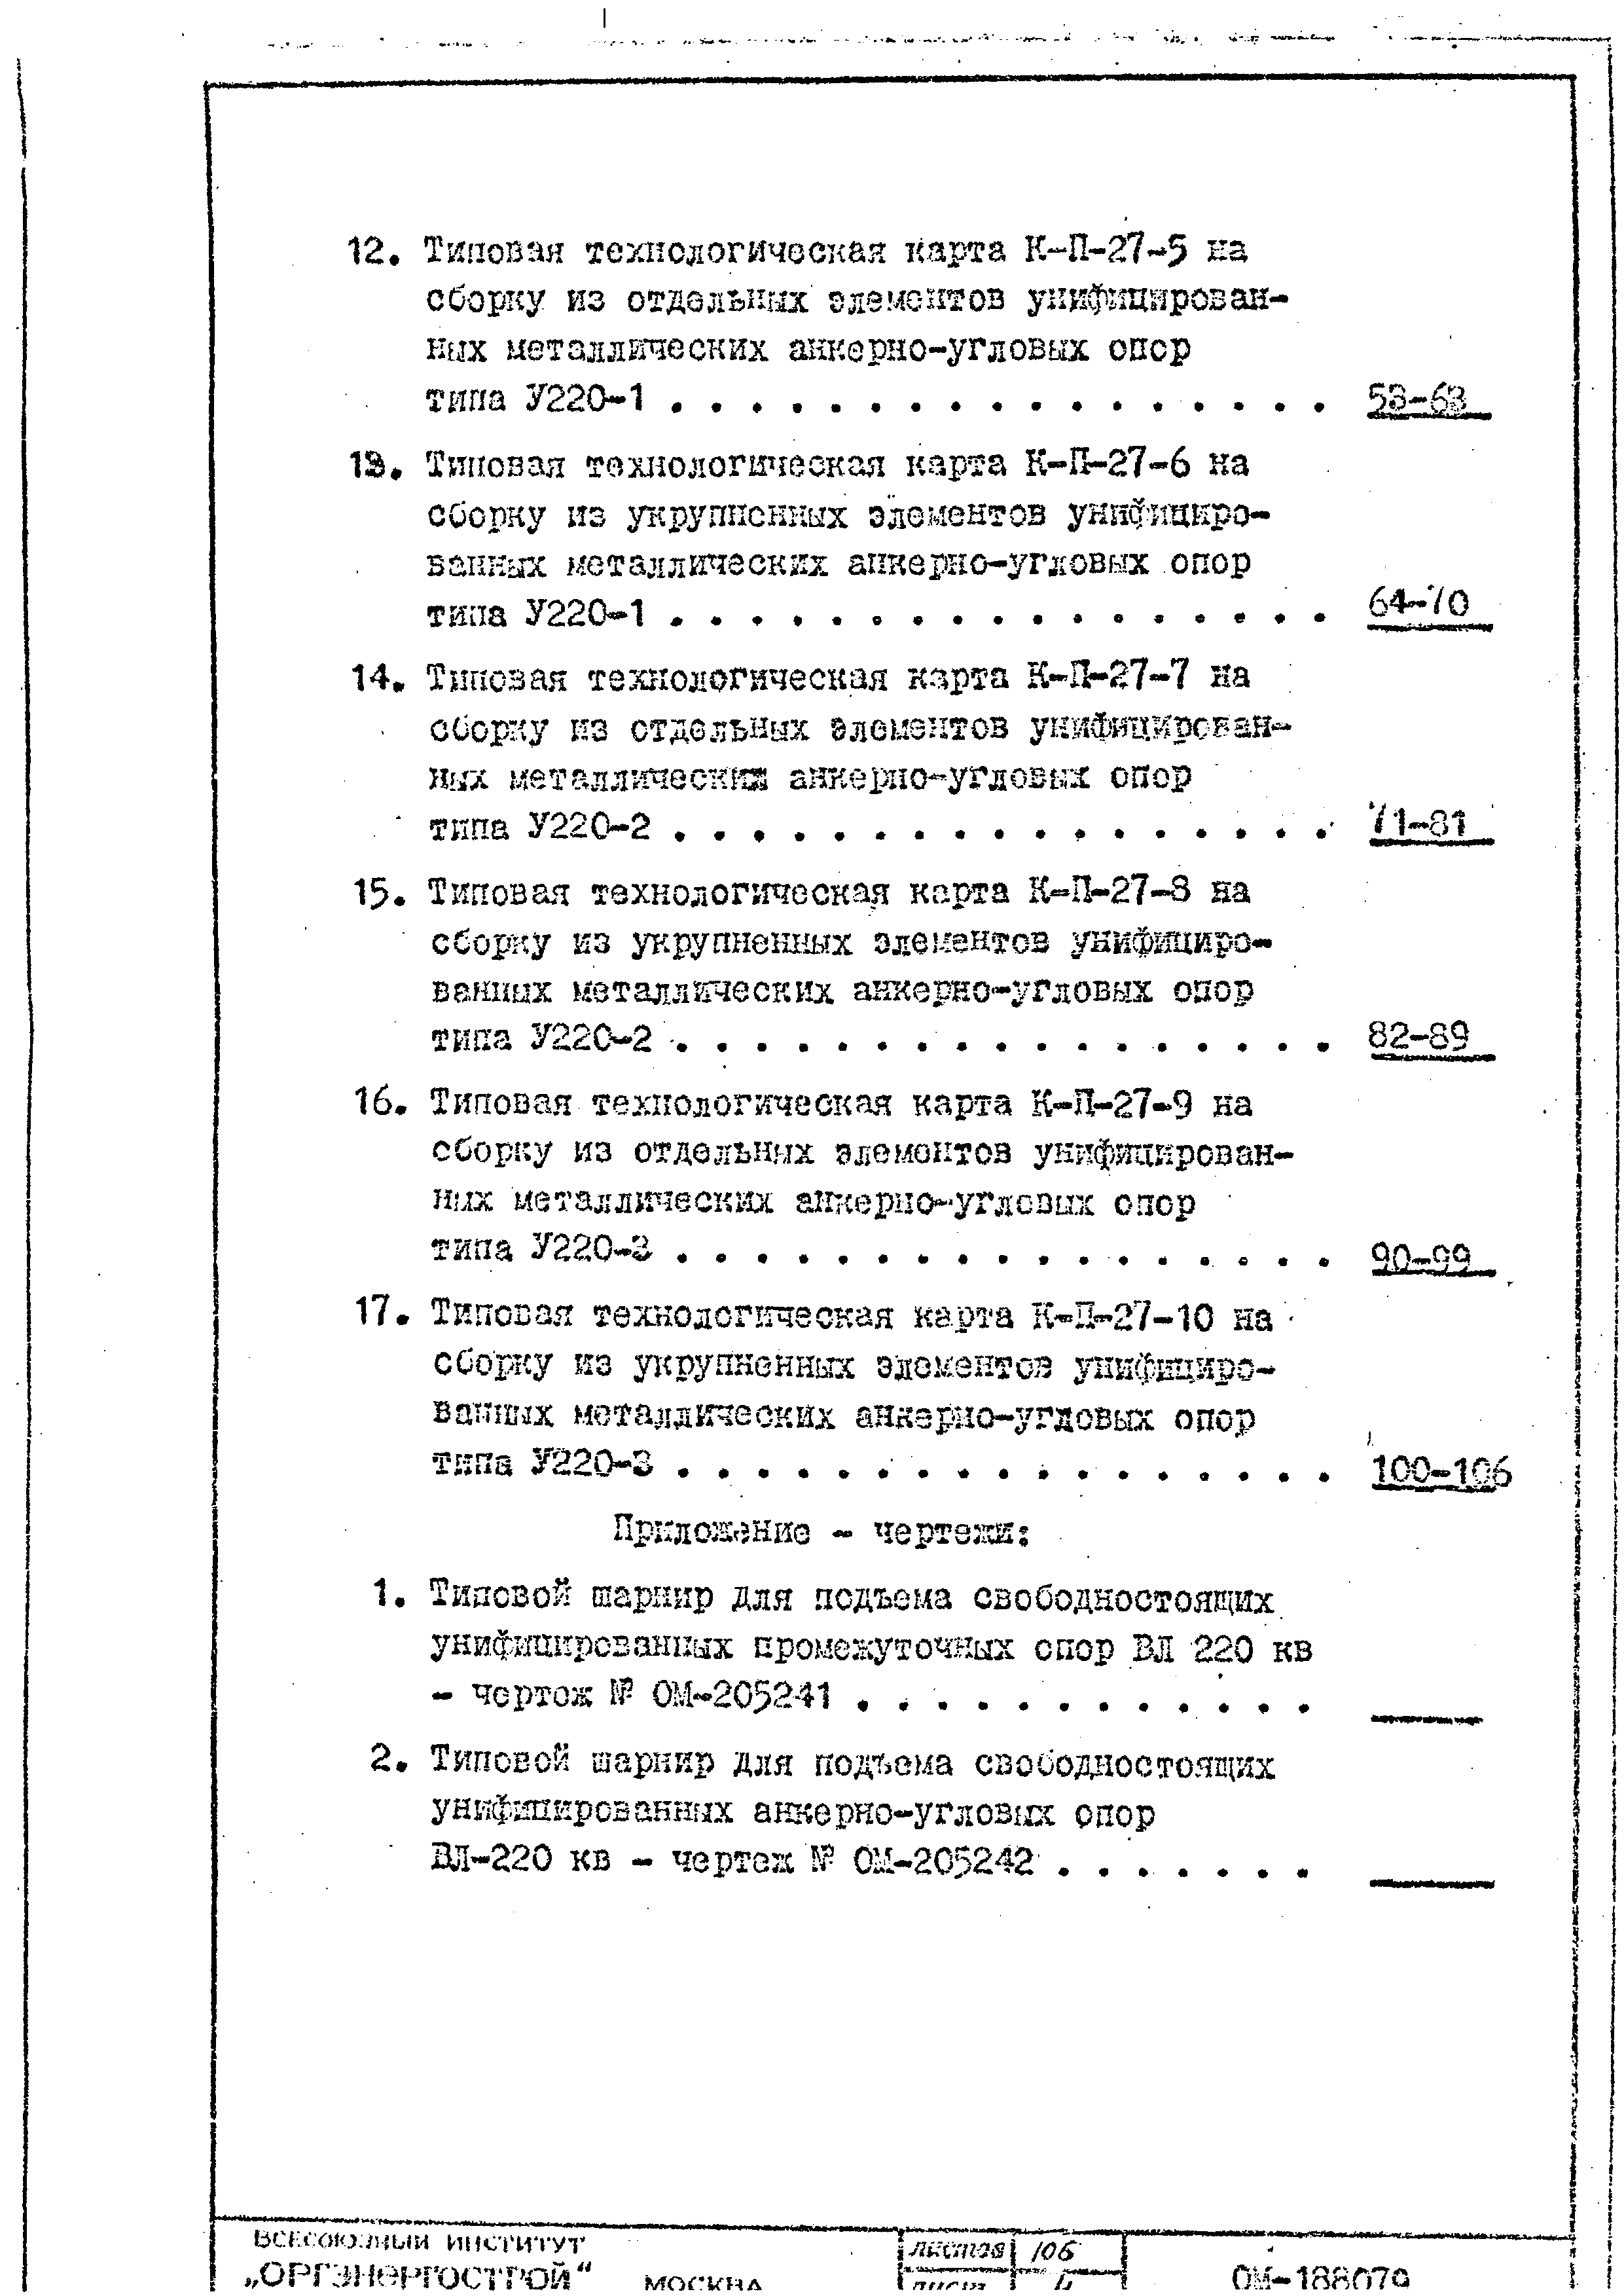 ТТК К-II-27-7